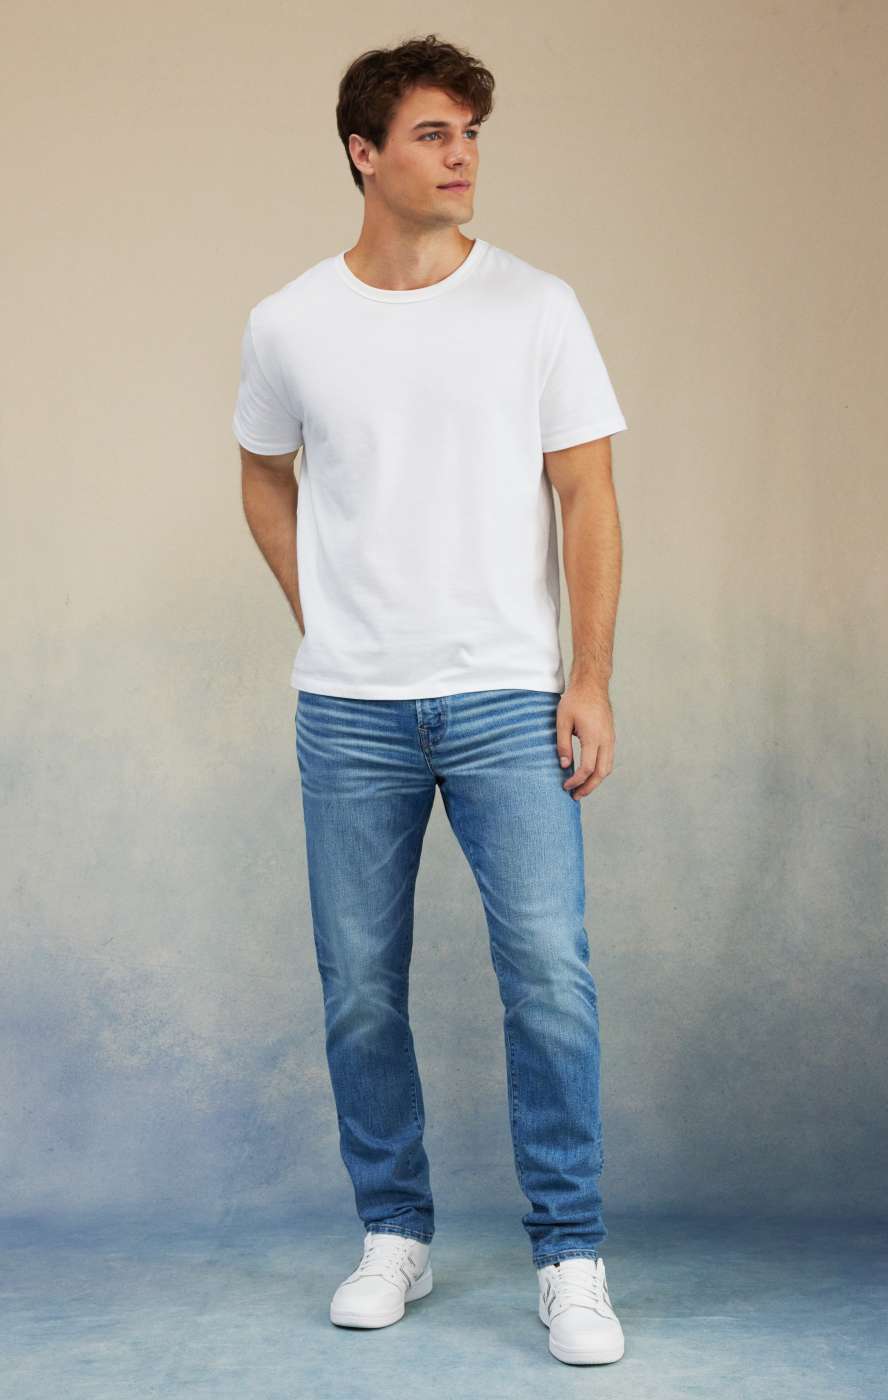 VOTICO Slim Men Blue Jeans - Buy VOTICO Slim Men Blue Jeans Online